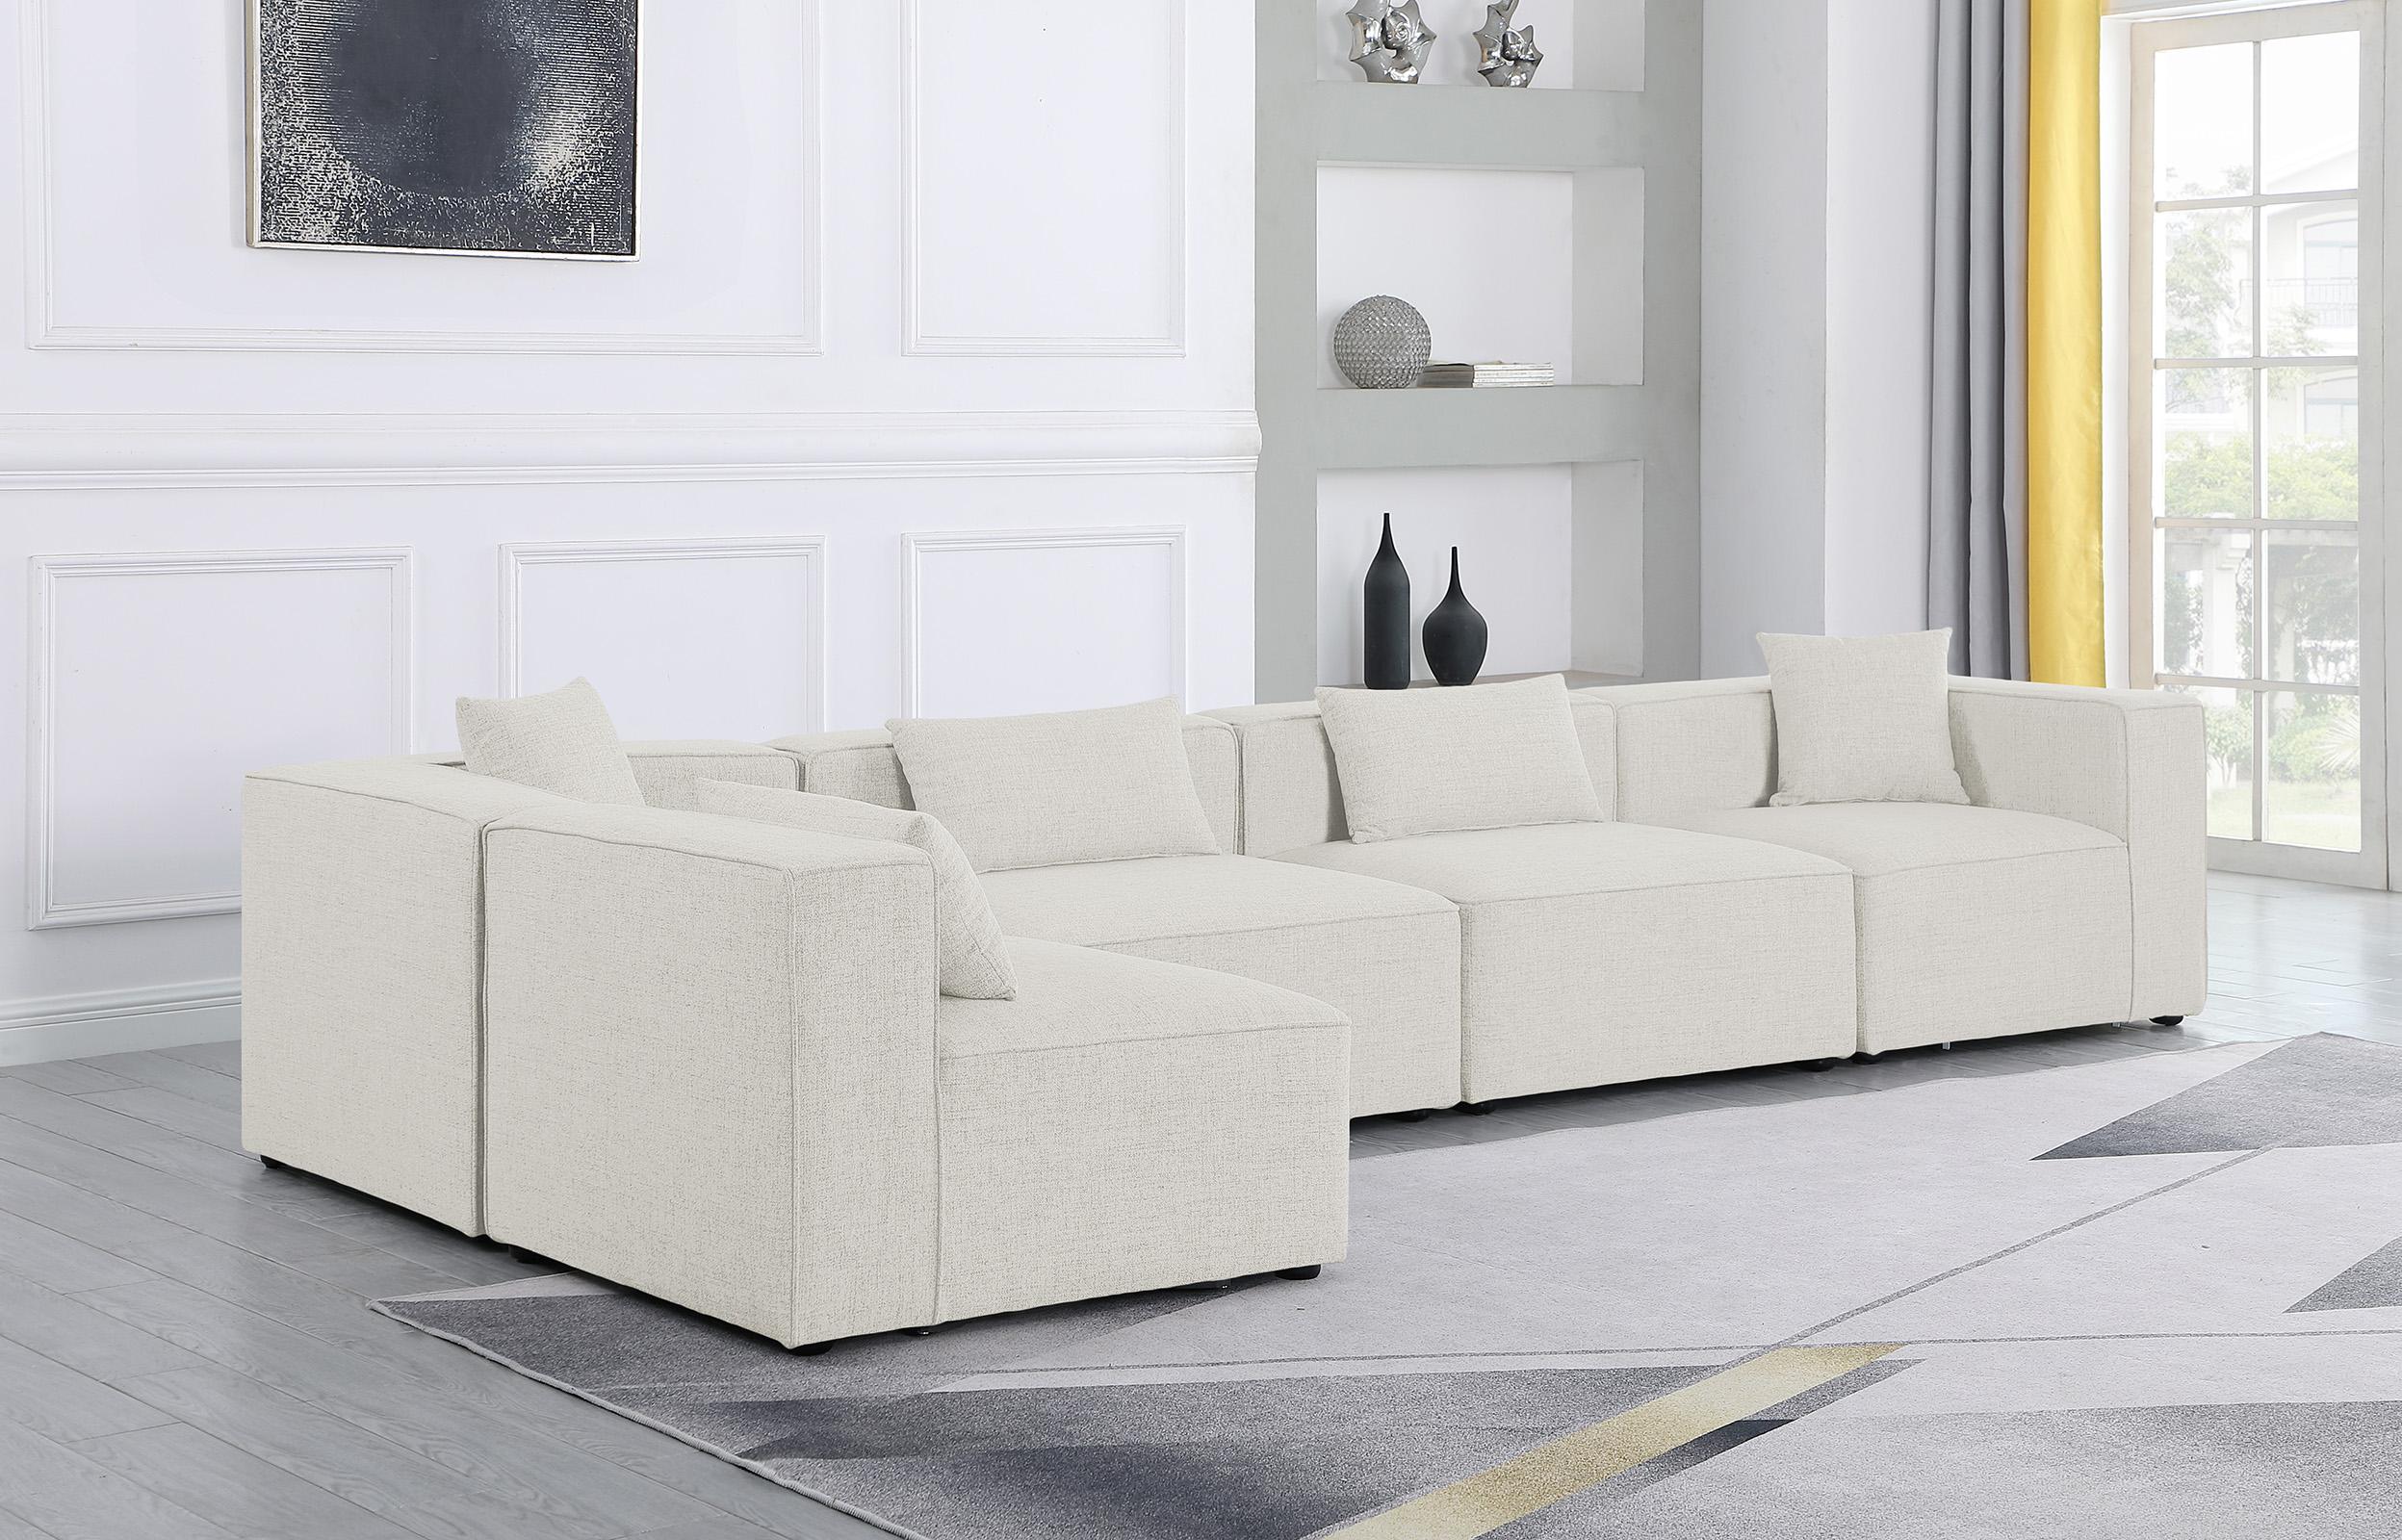 

    
Meridian Furniture CUBE 630Cream-Sec5D Modular Sectional Sofa Cream 630Cream-Sec5D
